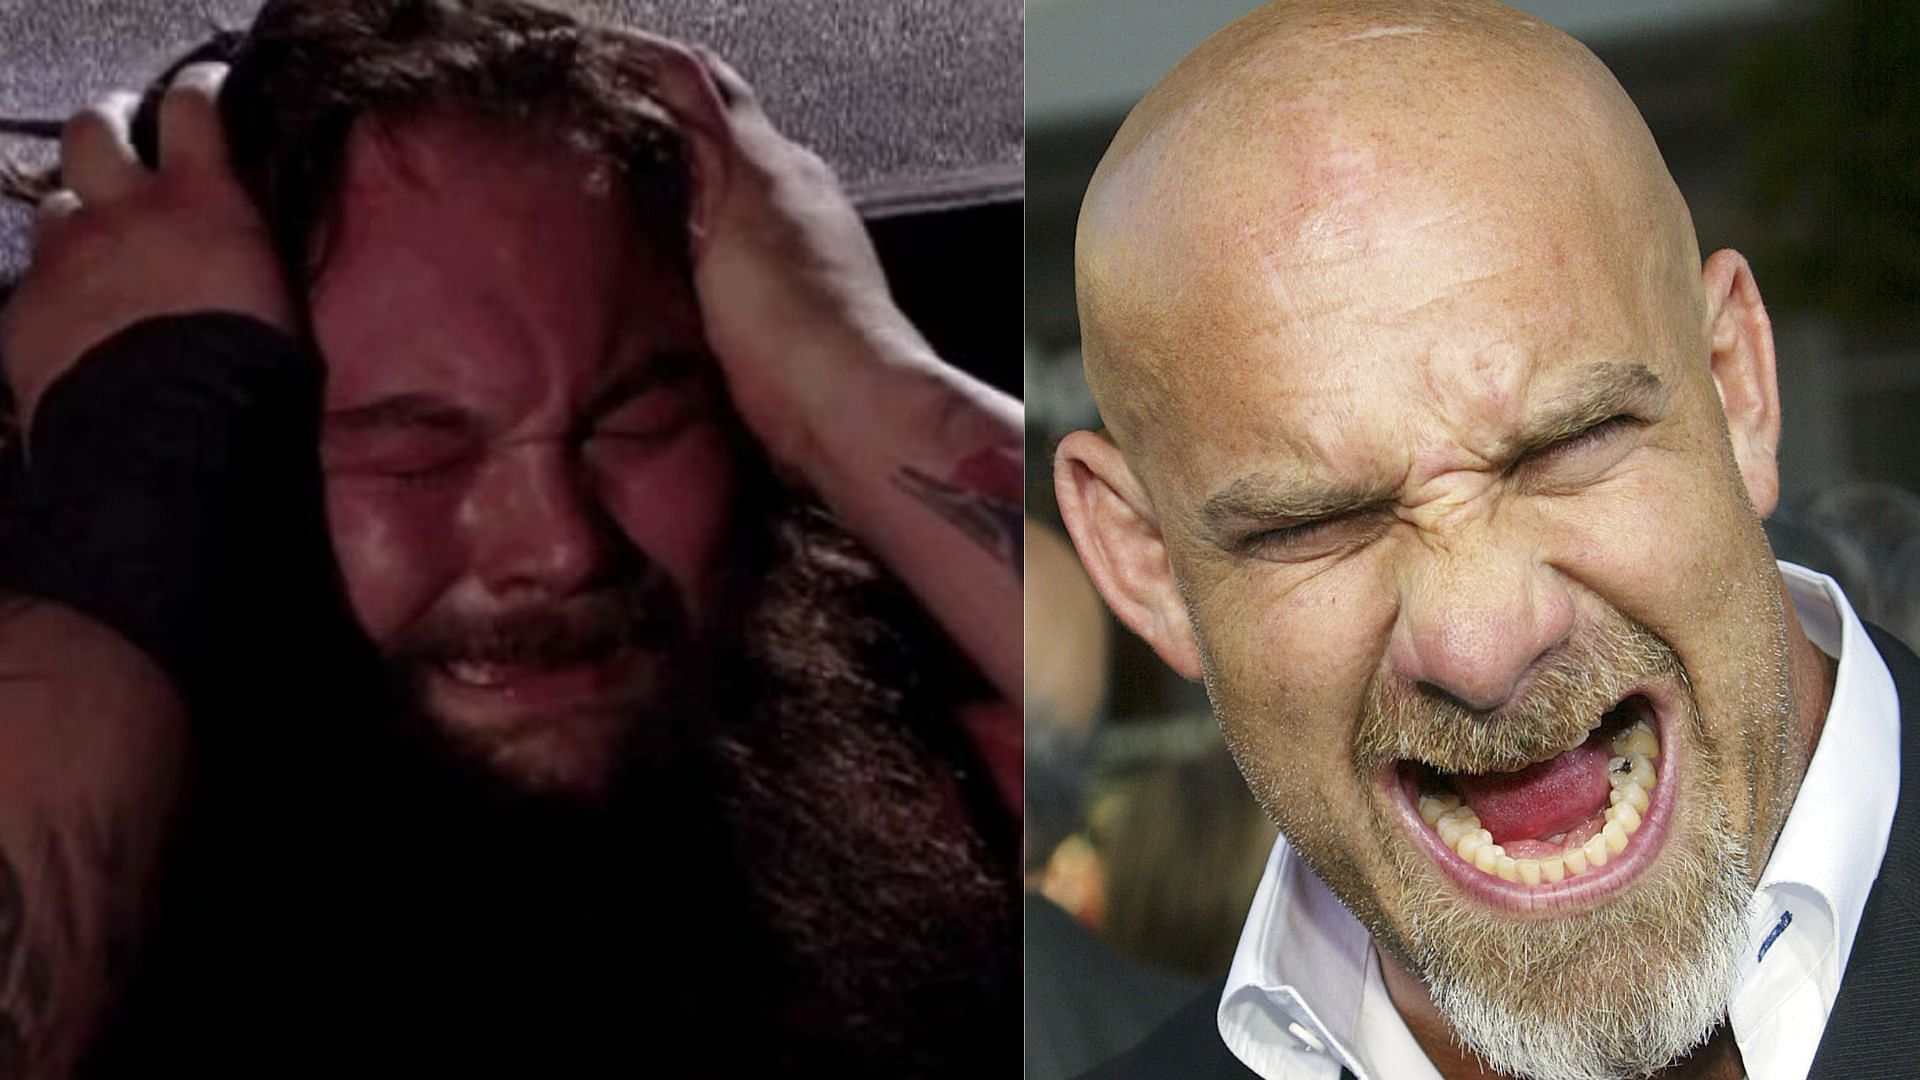 Goldberg defeated Bray Wyatt at WWE Super ShowDown 2020